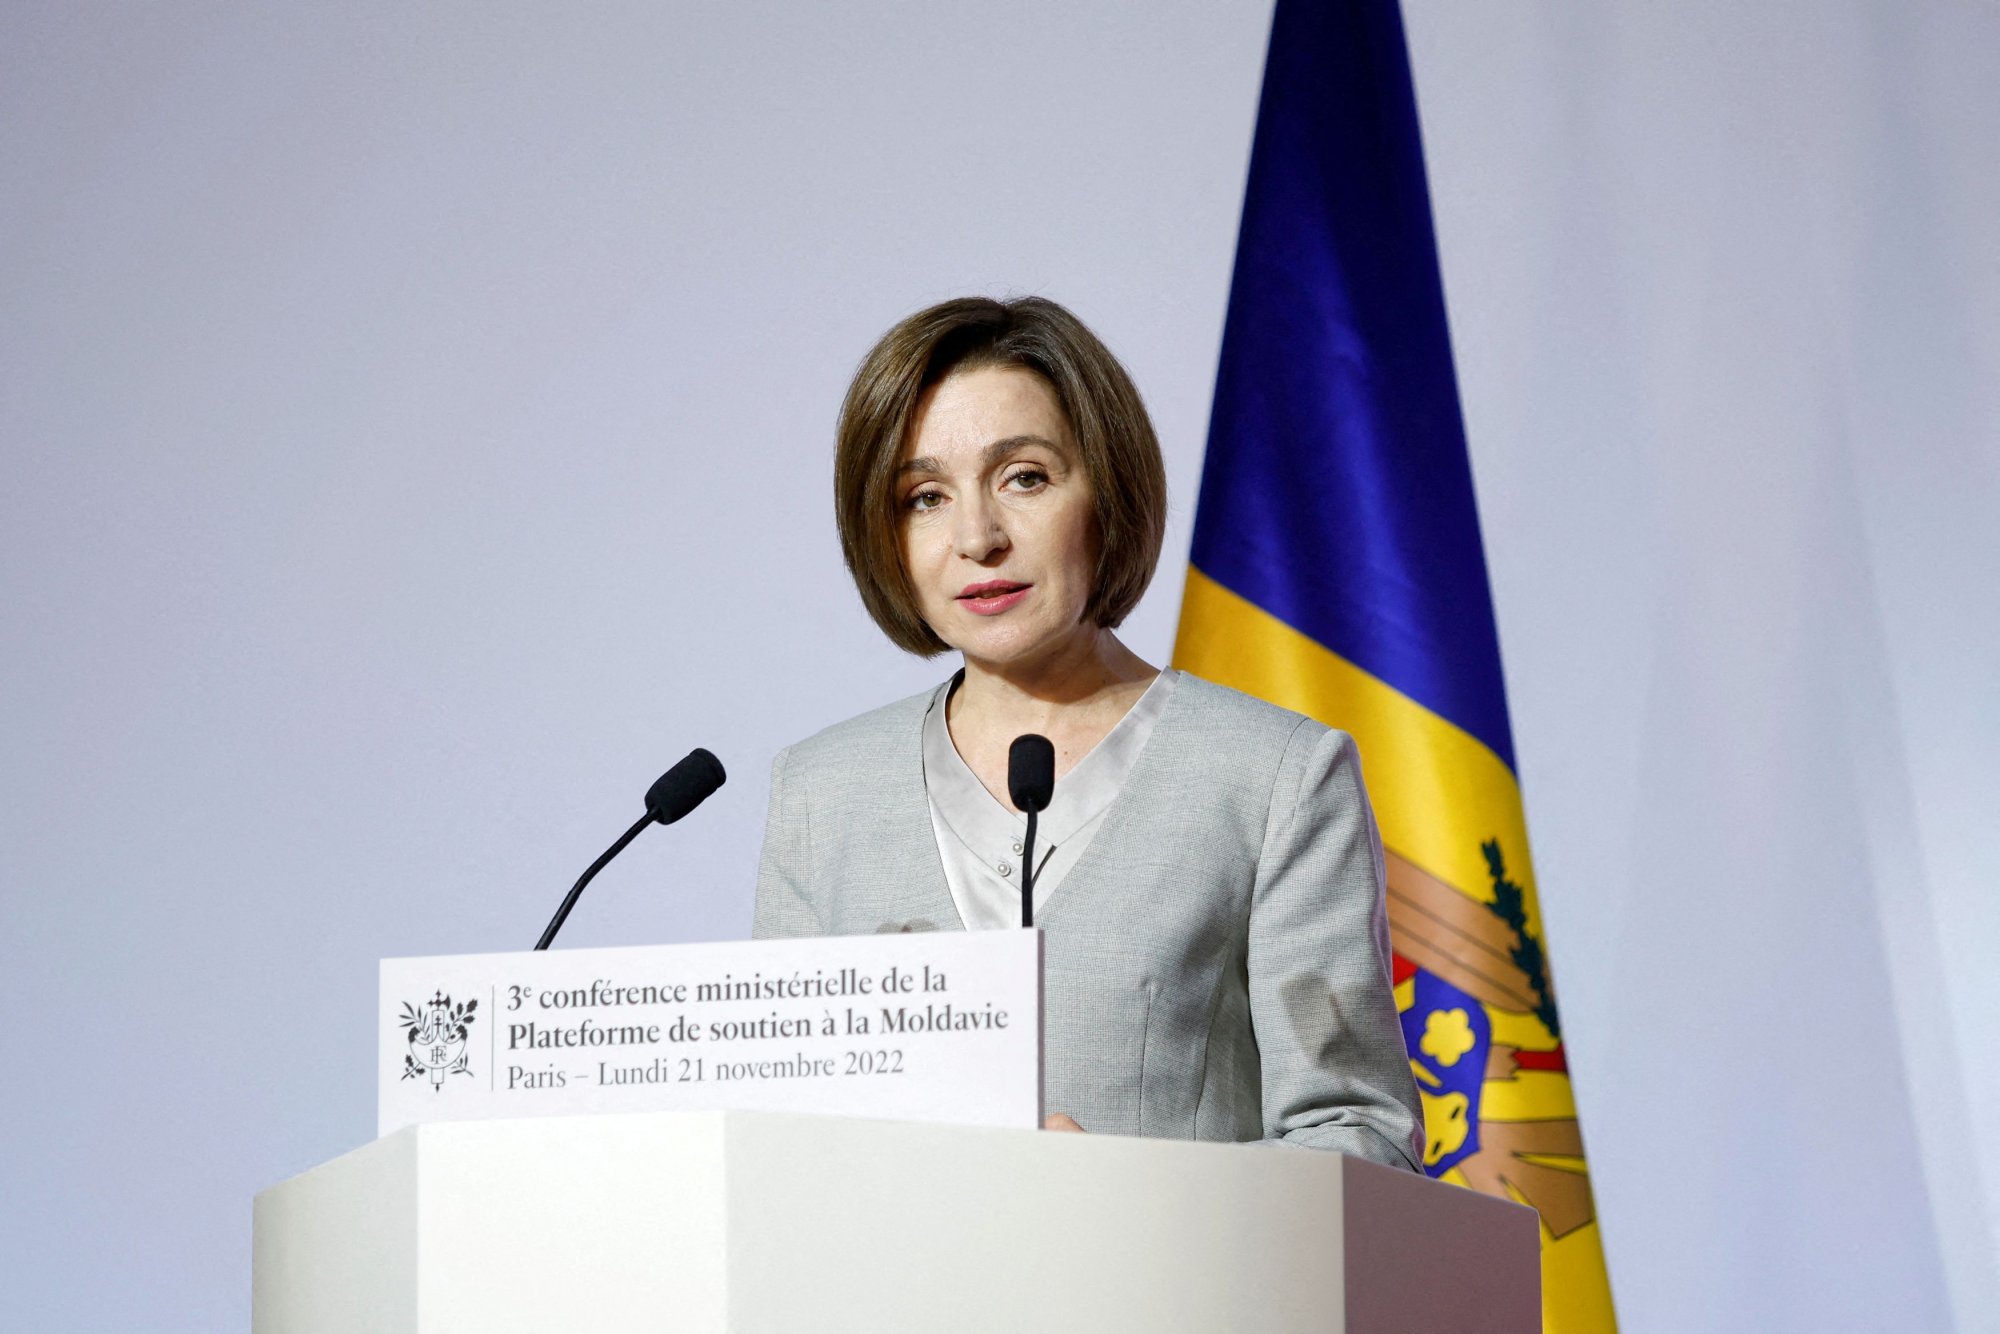 Μολδαβία: Ρωσική ανάμιξη στις εκλογές καταγγέλλει η πρόεδρος - «Αγοράζουν ψηφοφόρους»